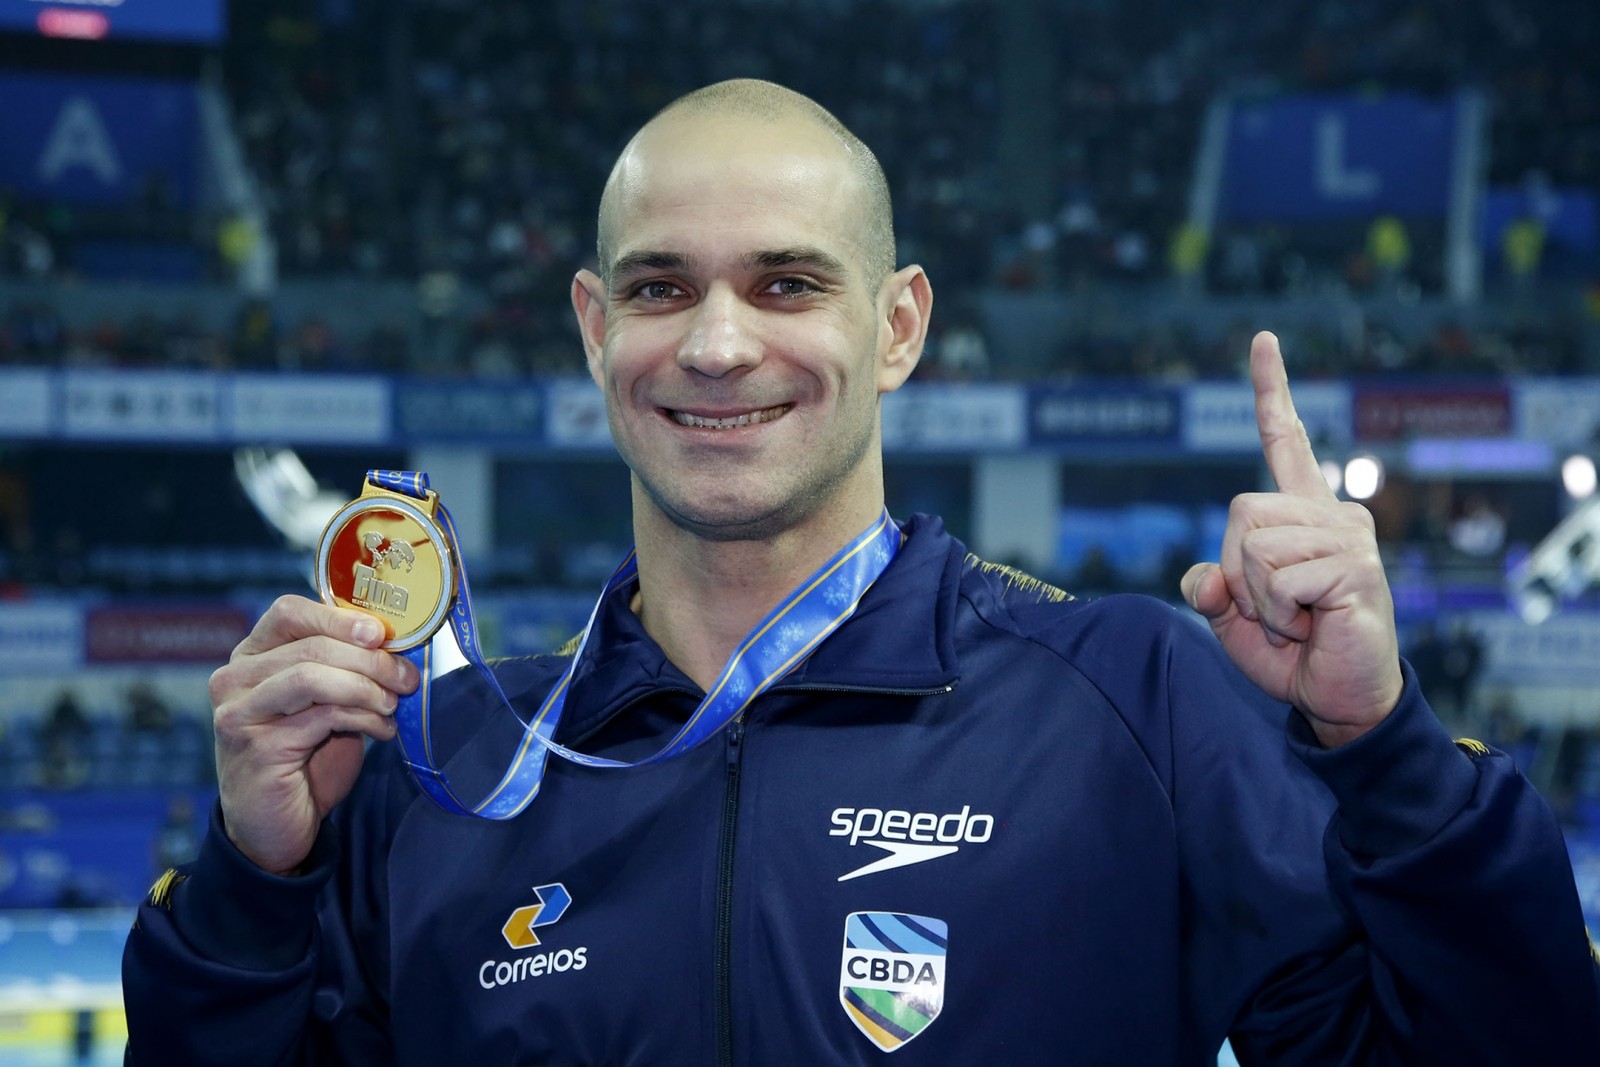 Brasileiro fatura ouro na China e se torna o nadador mais velho a ser campeão mundial